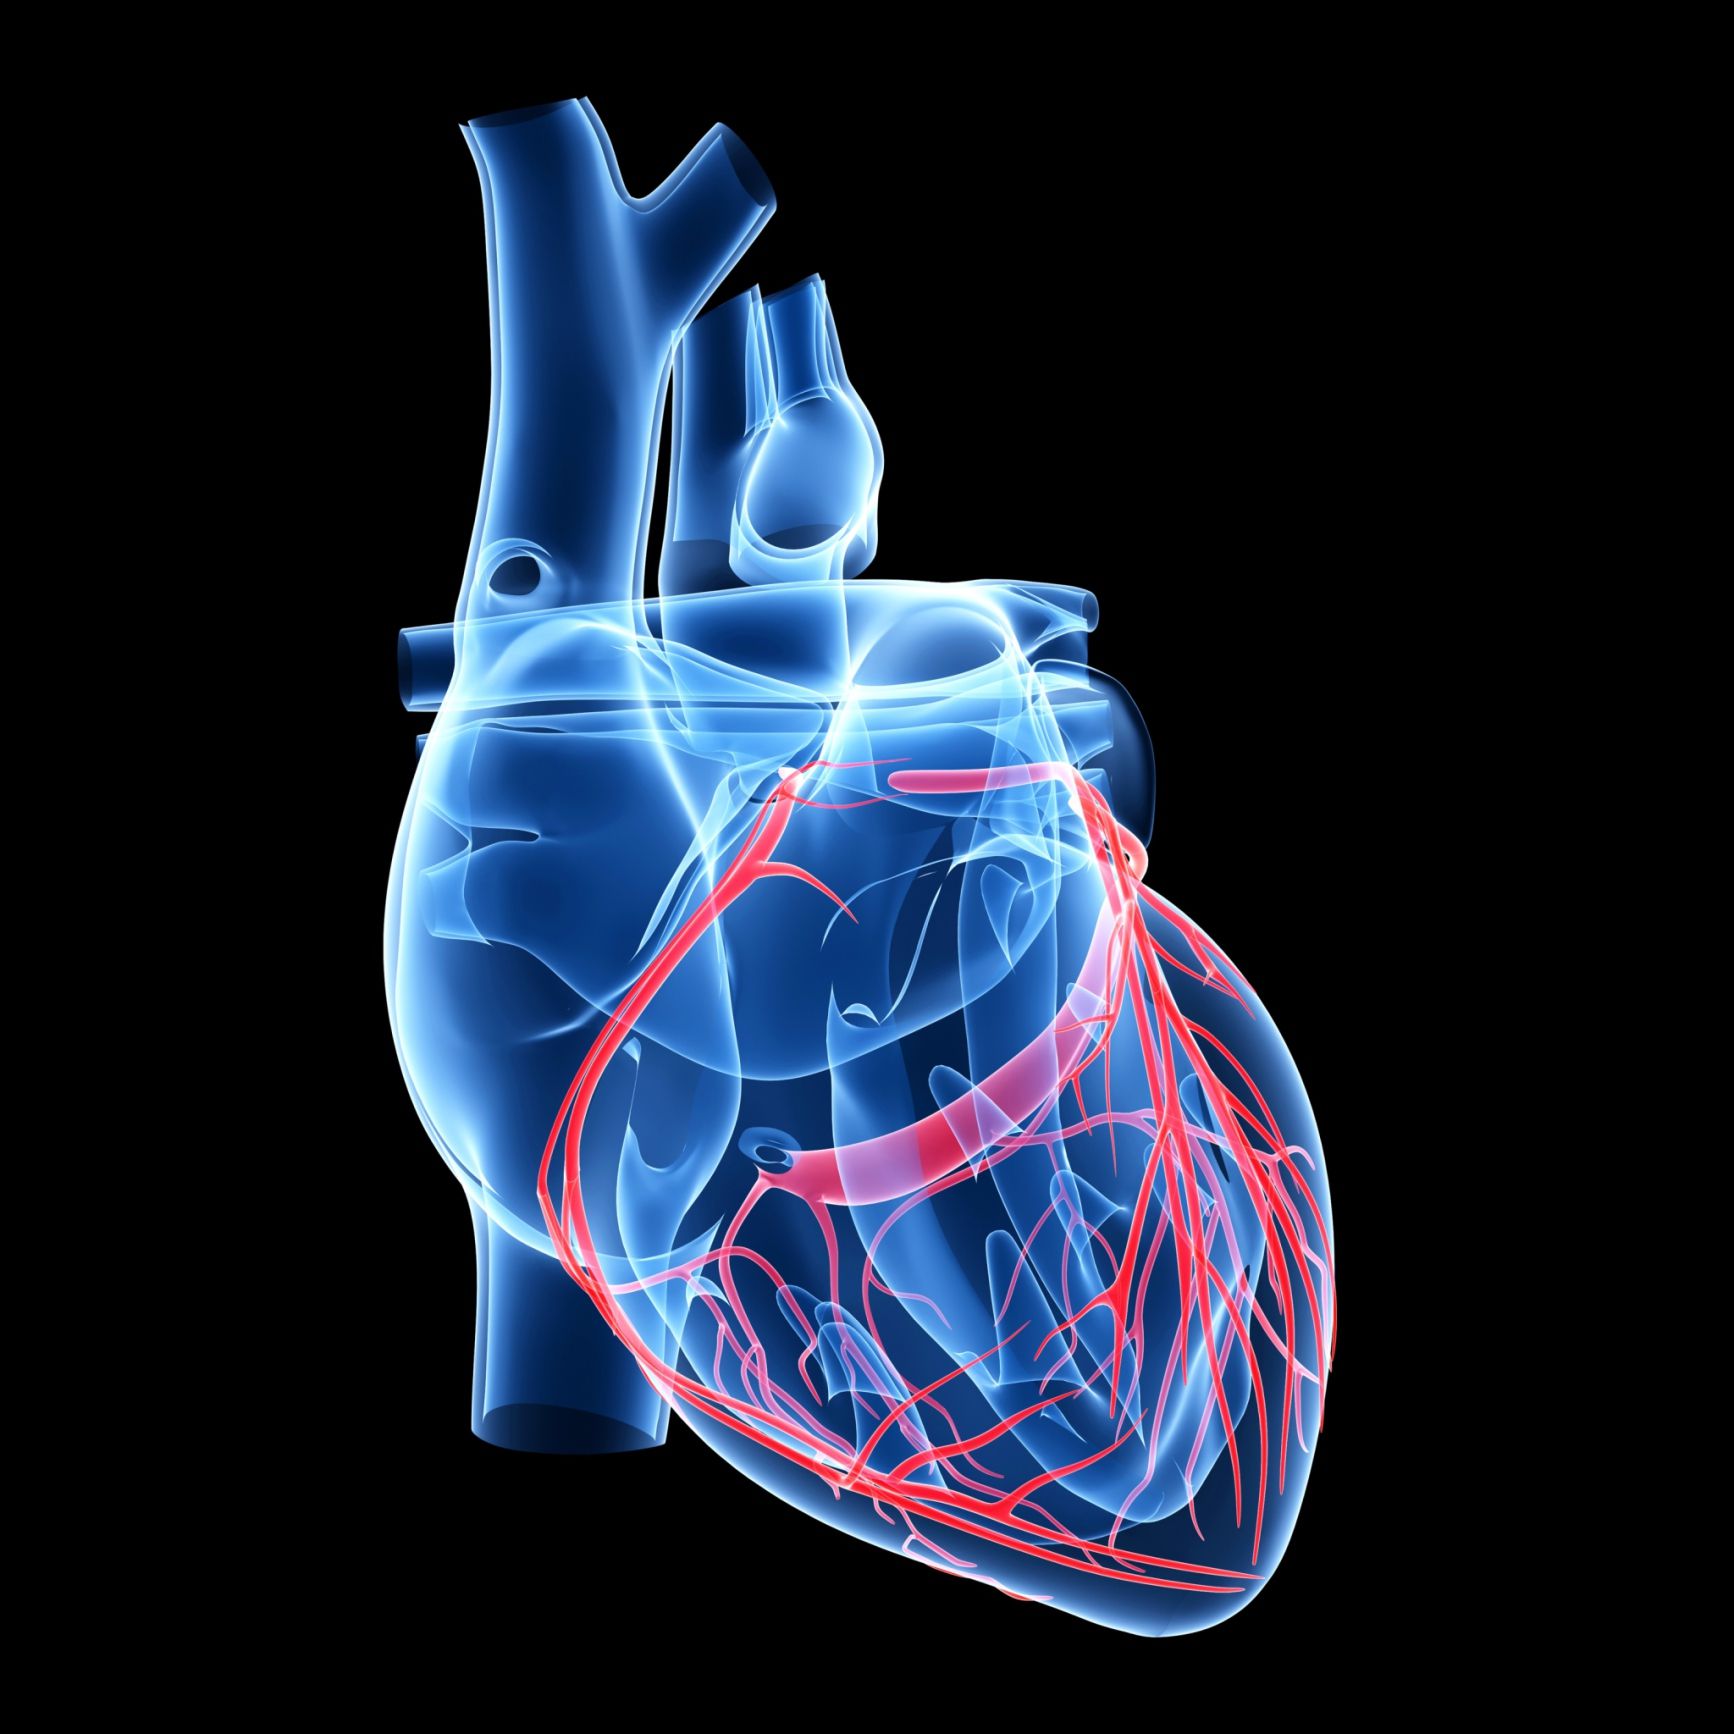 anatomia de corazon ct pdf